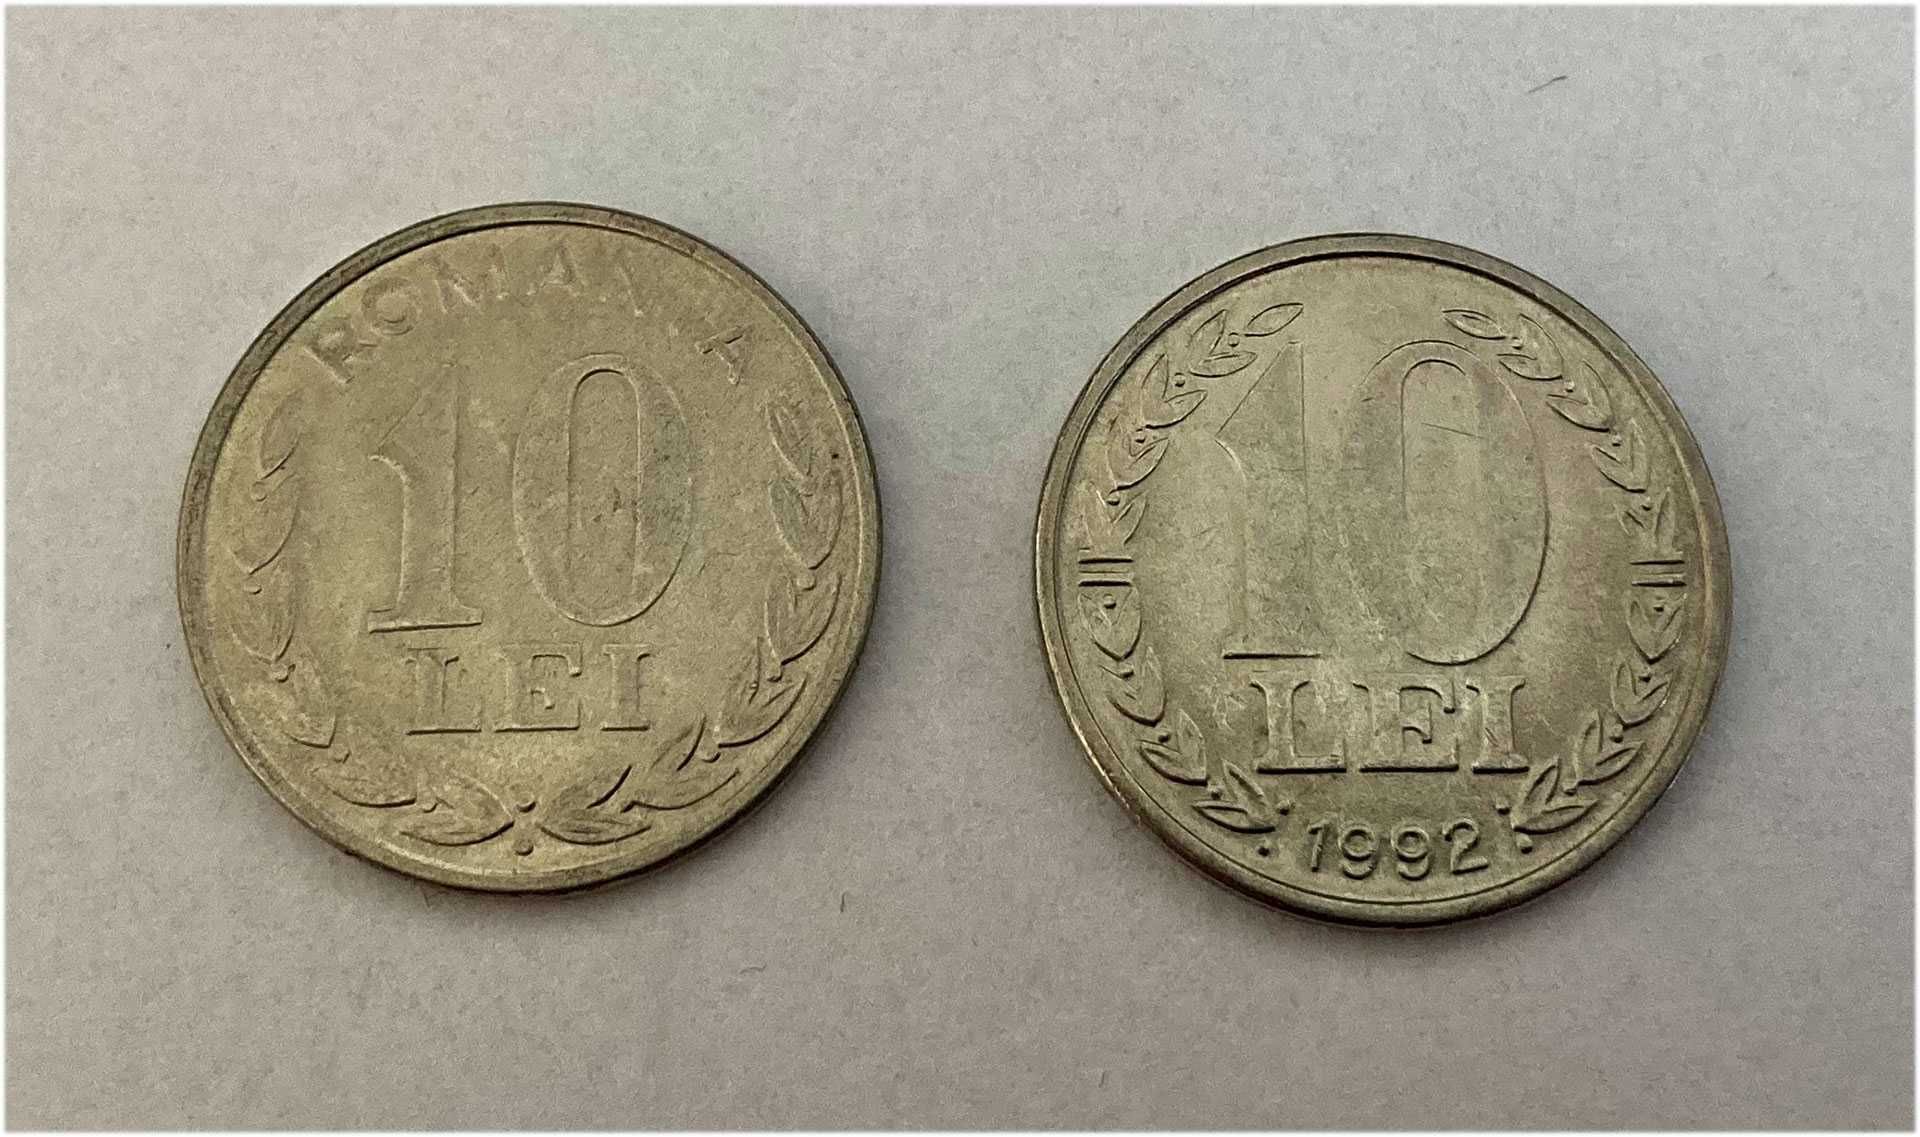 Monede 1 leu, 5 lei, 10 lei, 20 lei, 1992-1994